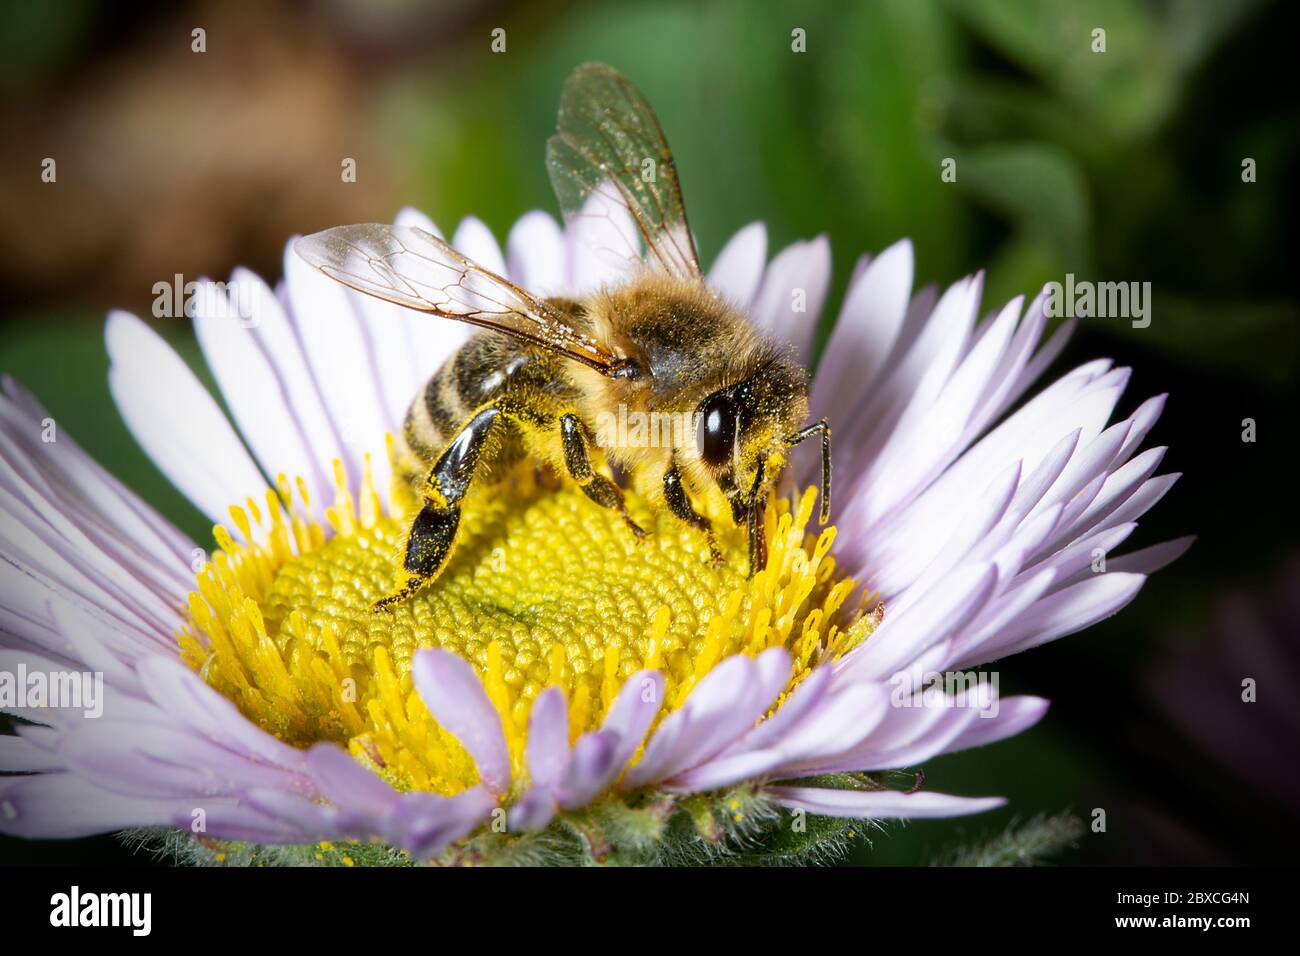 Europäische Honigbiene (APIs mellifera) auf Osteospermum ecklonis (Afrikanische Gänseblümchen) bestäubende Blume. Biene auf einer Blume Stockfoto